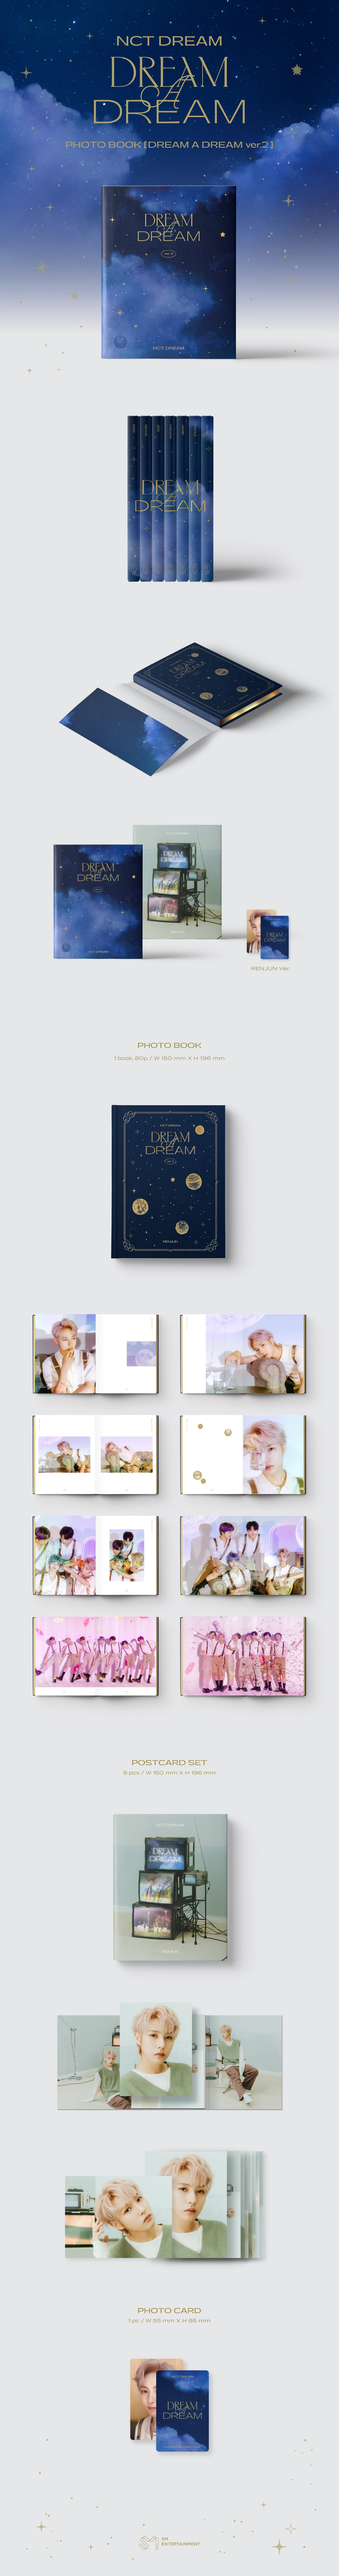 NCT Dream - DREAM A DREAM Ver.2 (写真集)